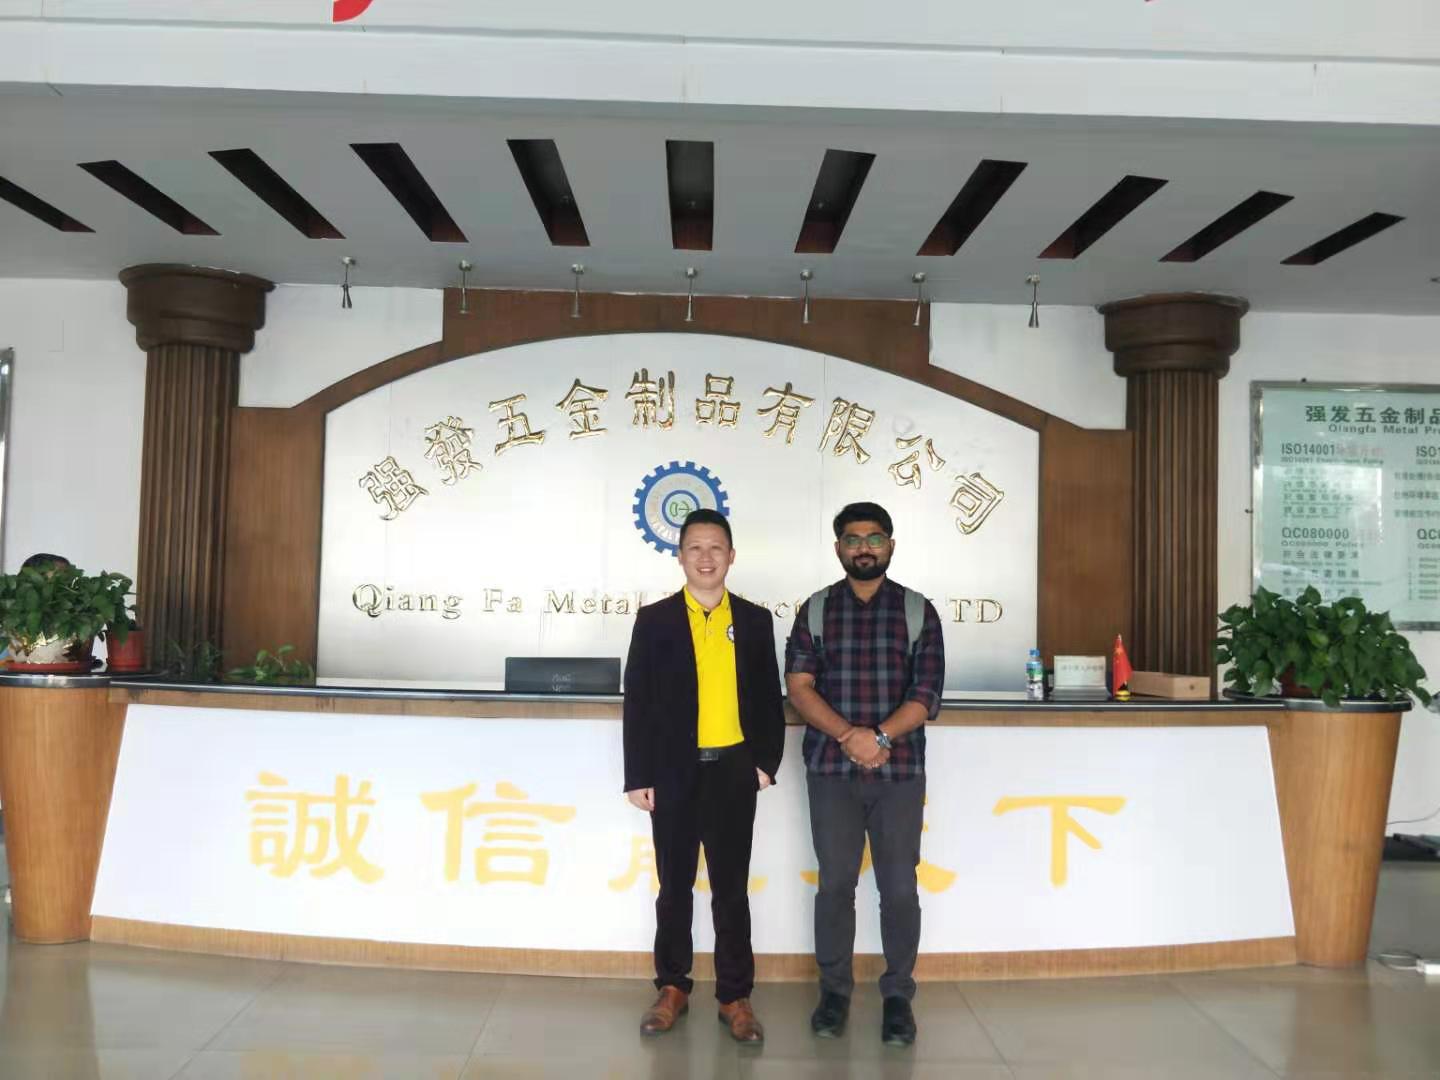 2019 NOV. 25TH  KCPL Company Visiting Qiang Fa Metal Product